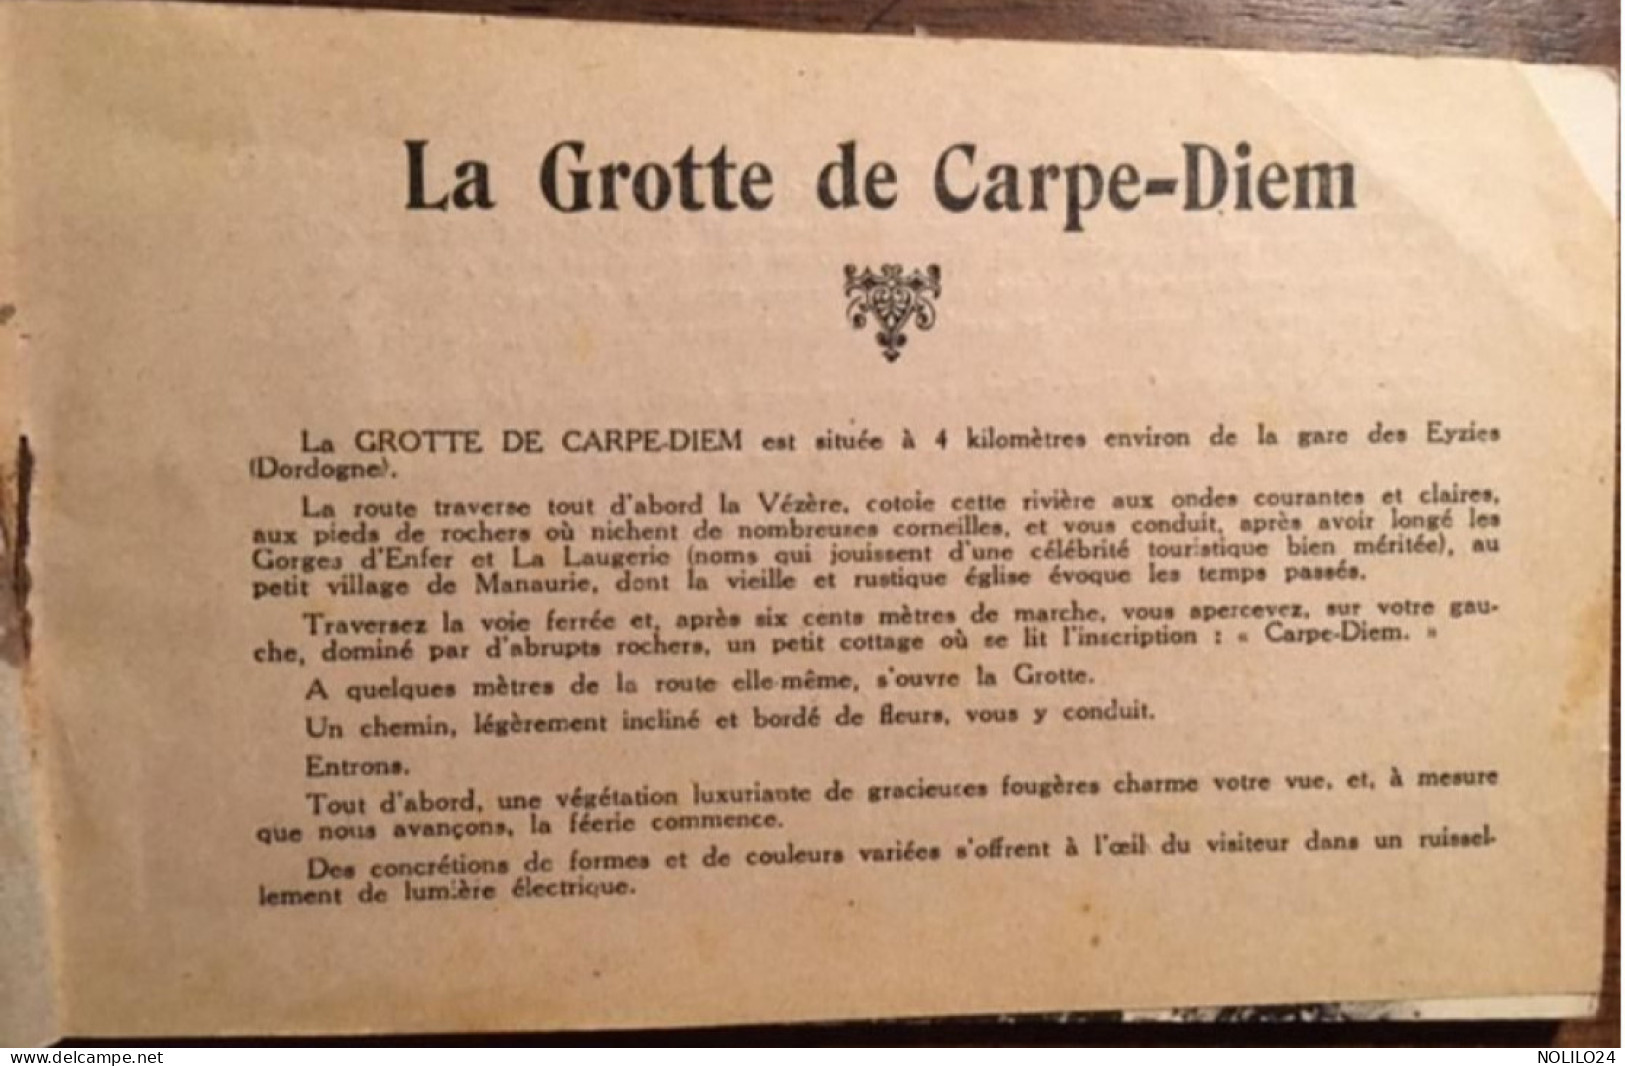 Carnet De 10 CPA, 24 Les Eyzies, Album Souvenir La Grotte De CARPE-DIEM - Les Eyzies